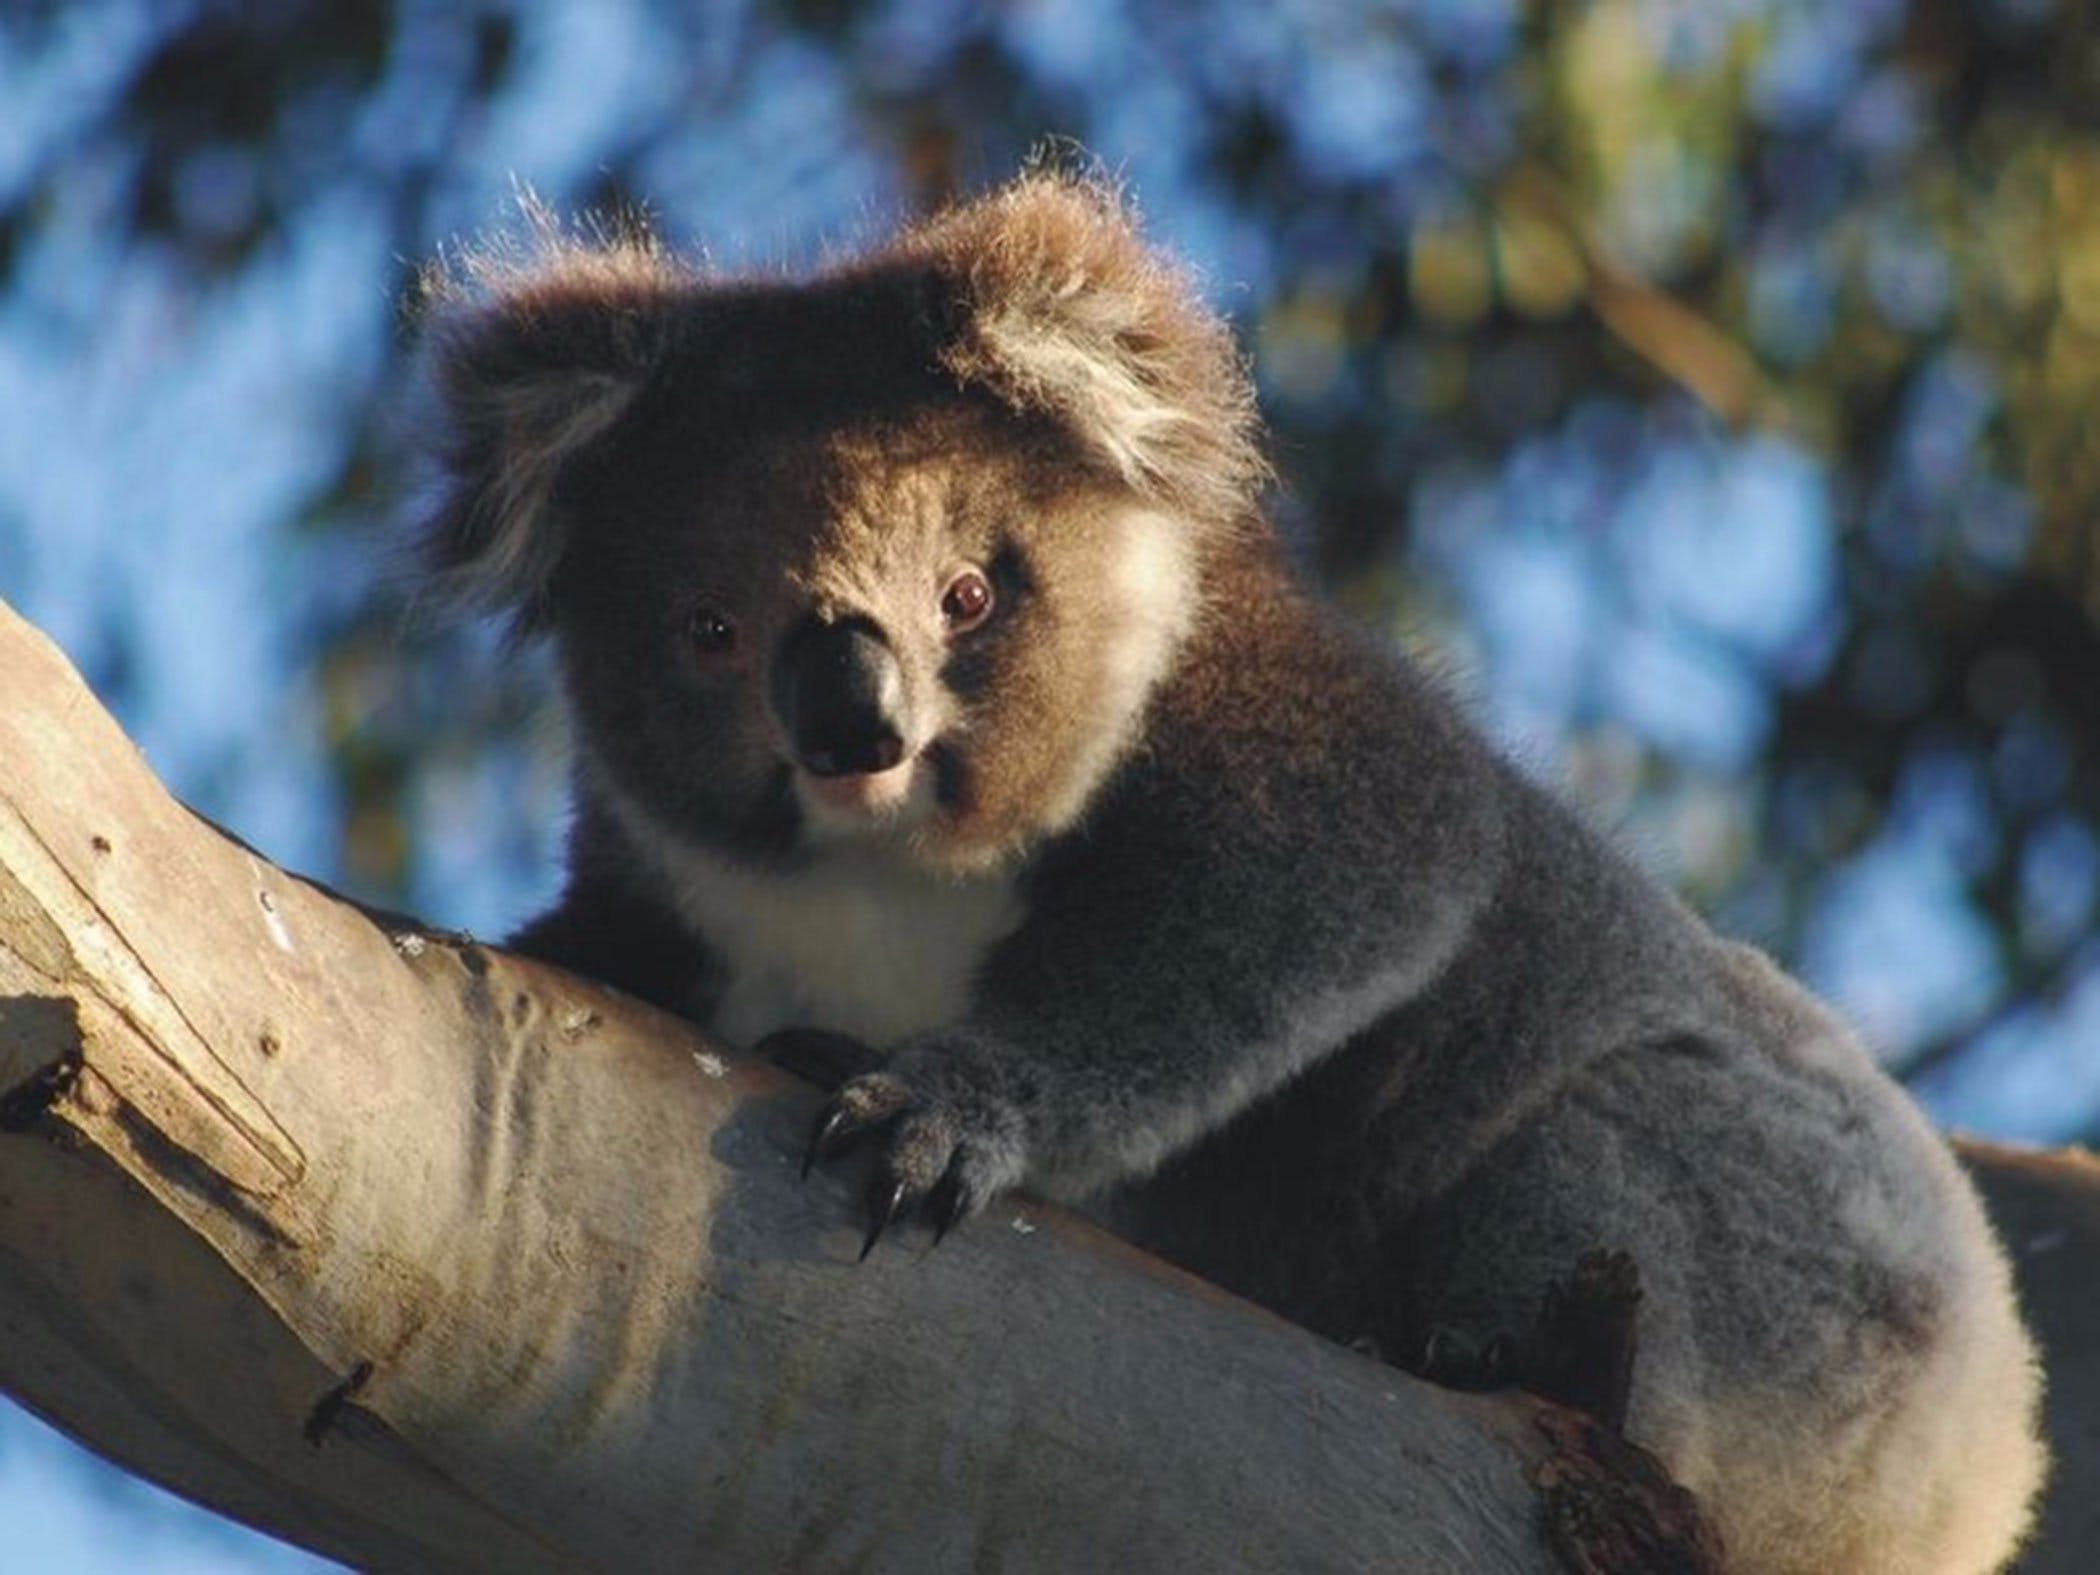 Bimbi Park Camping Under Koalas - Kempsey Accommodation